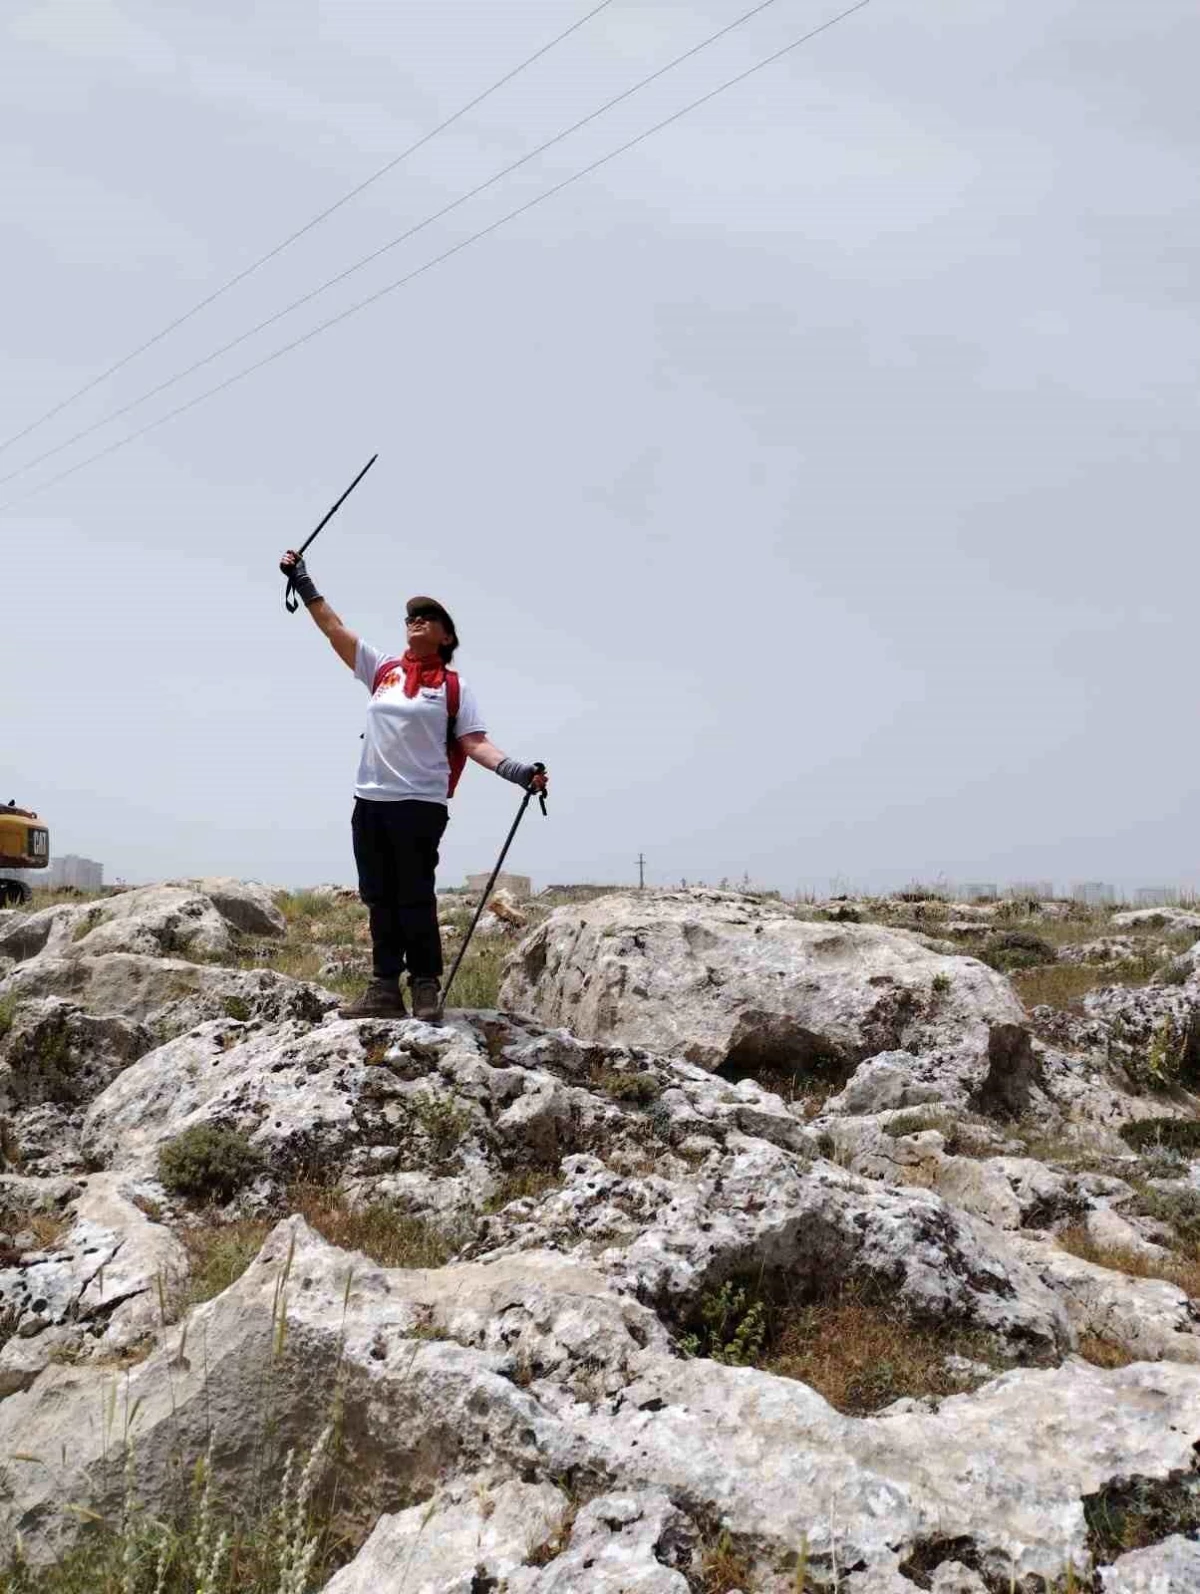 73 yaşındaki Nuran Demir, dağcılık sporuyla gençlere örnek oluyor